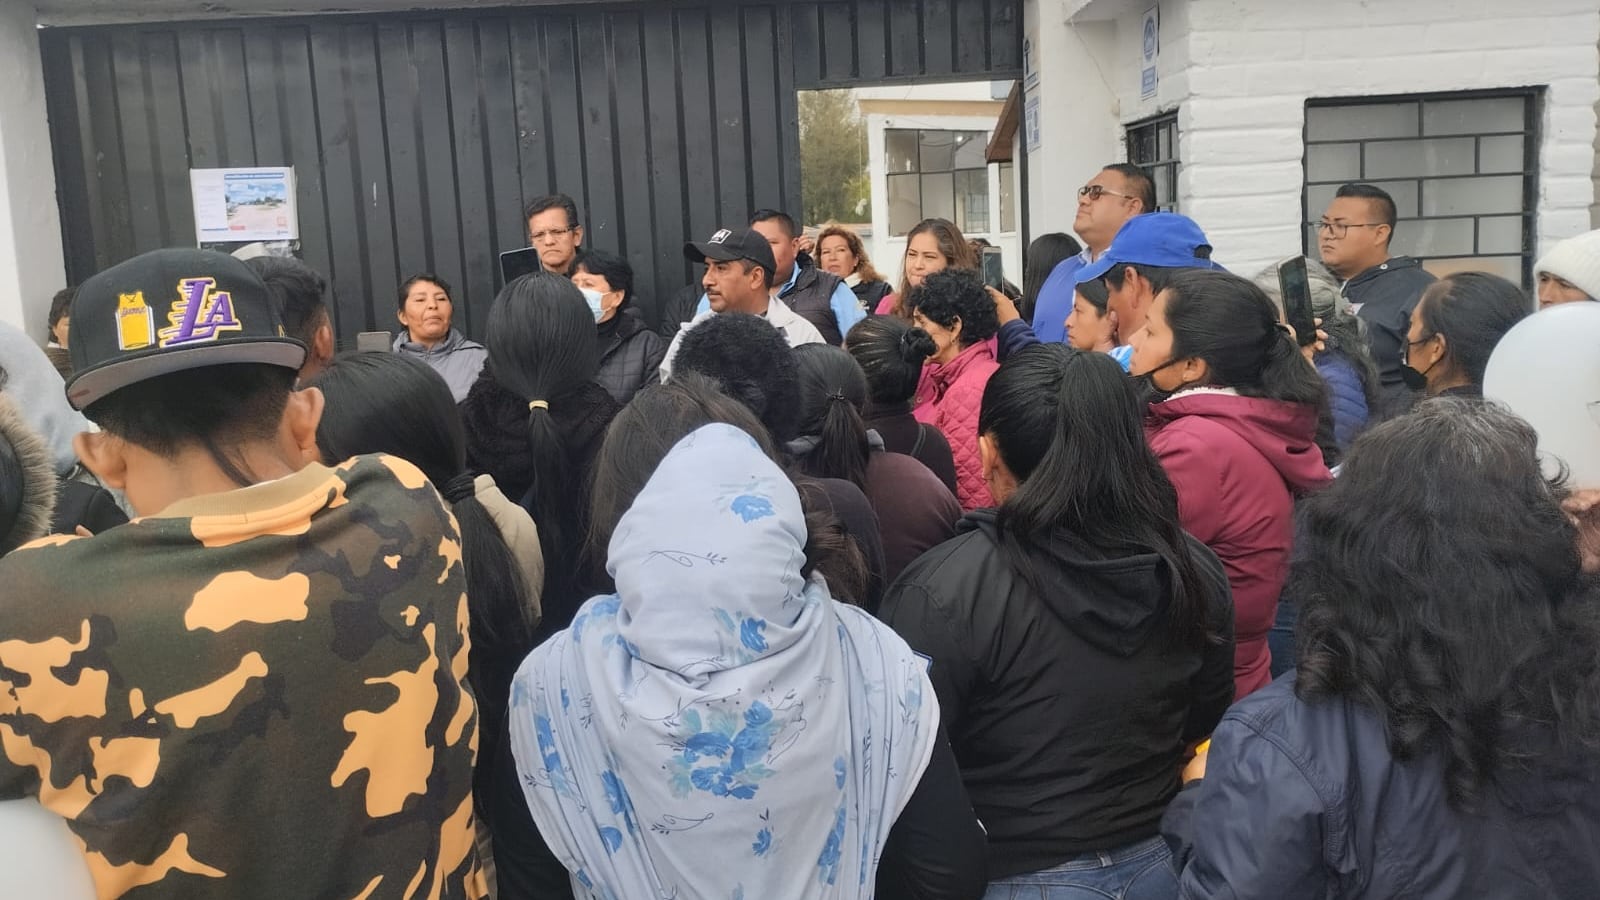 Situación en colegio de Quito preocupa a padres de familia luego de que estudiante fue apuñalado.